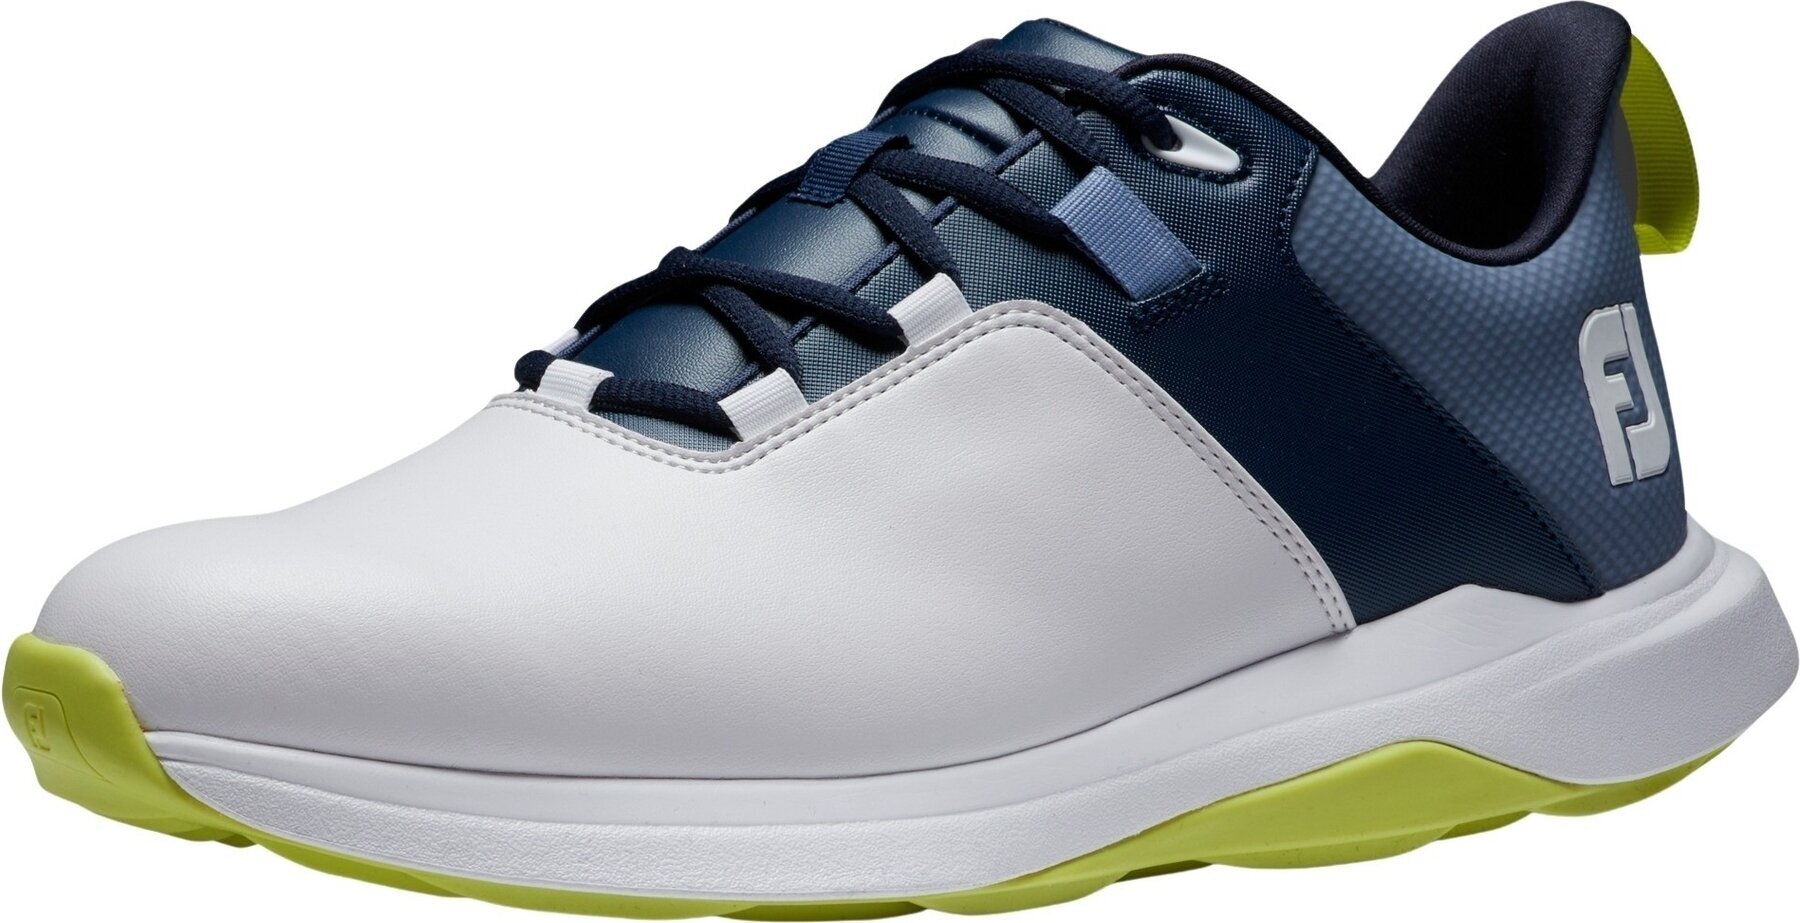 Herren Golfschuhe Footjoy ProLite Mens Golf Shoes White/Navy/Lime 42,5